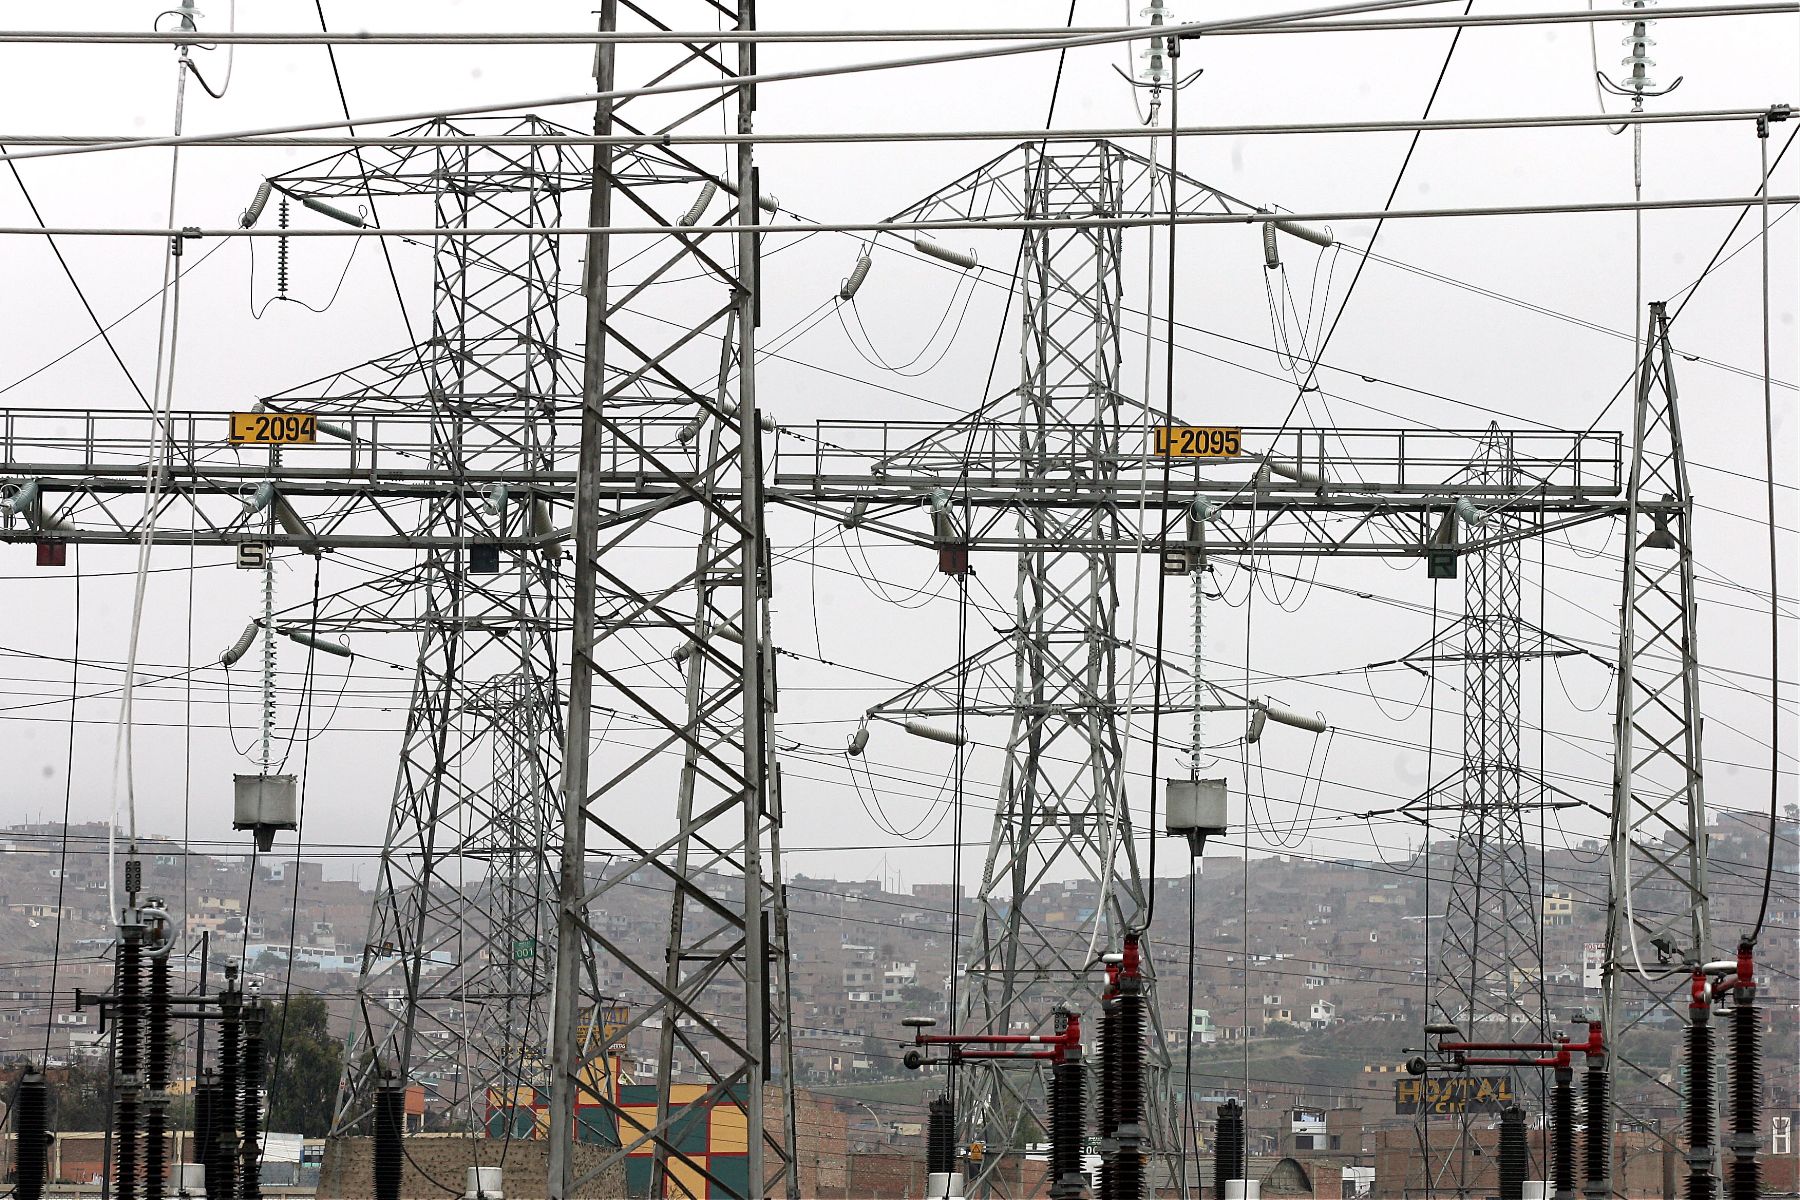 Incremento de 3.9% en la tarifa eléctrica para el sector industrial